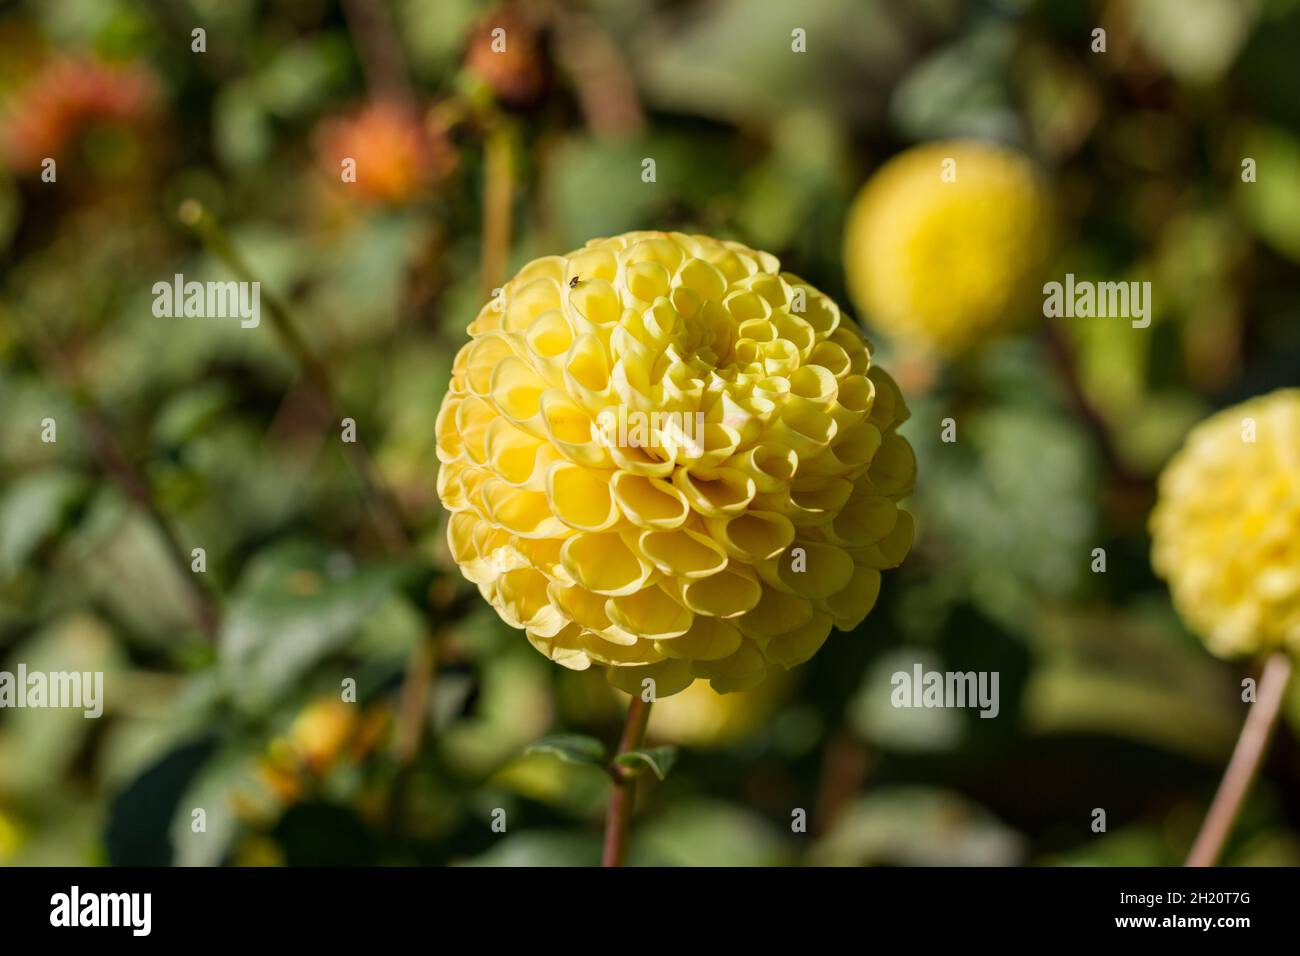 Fiore palla gialla immagini e fotografie stock ad alta risoluzione - Alamy